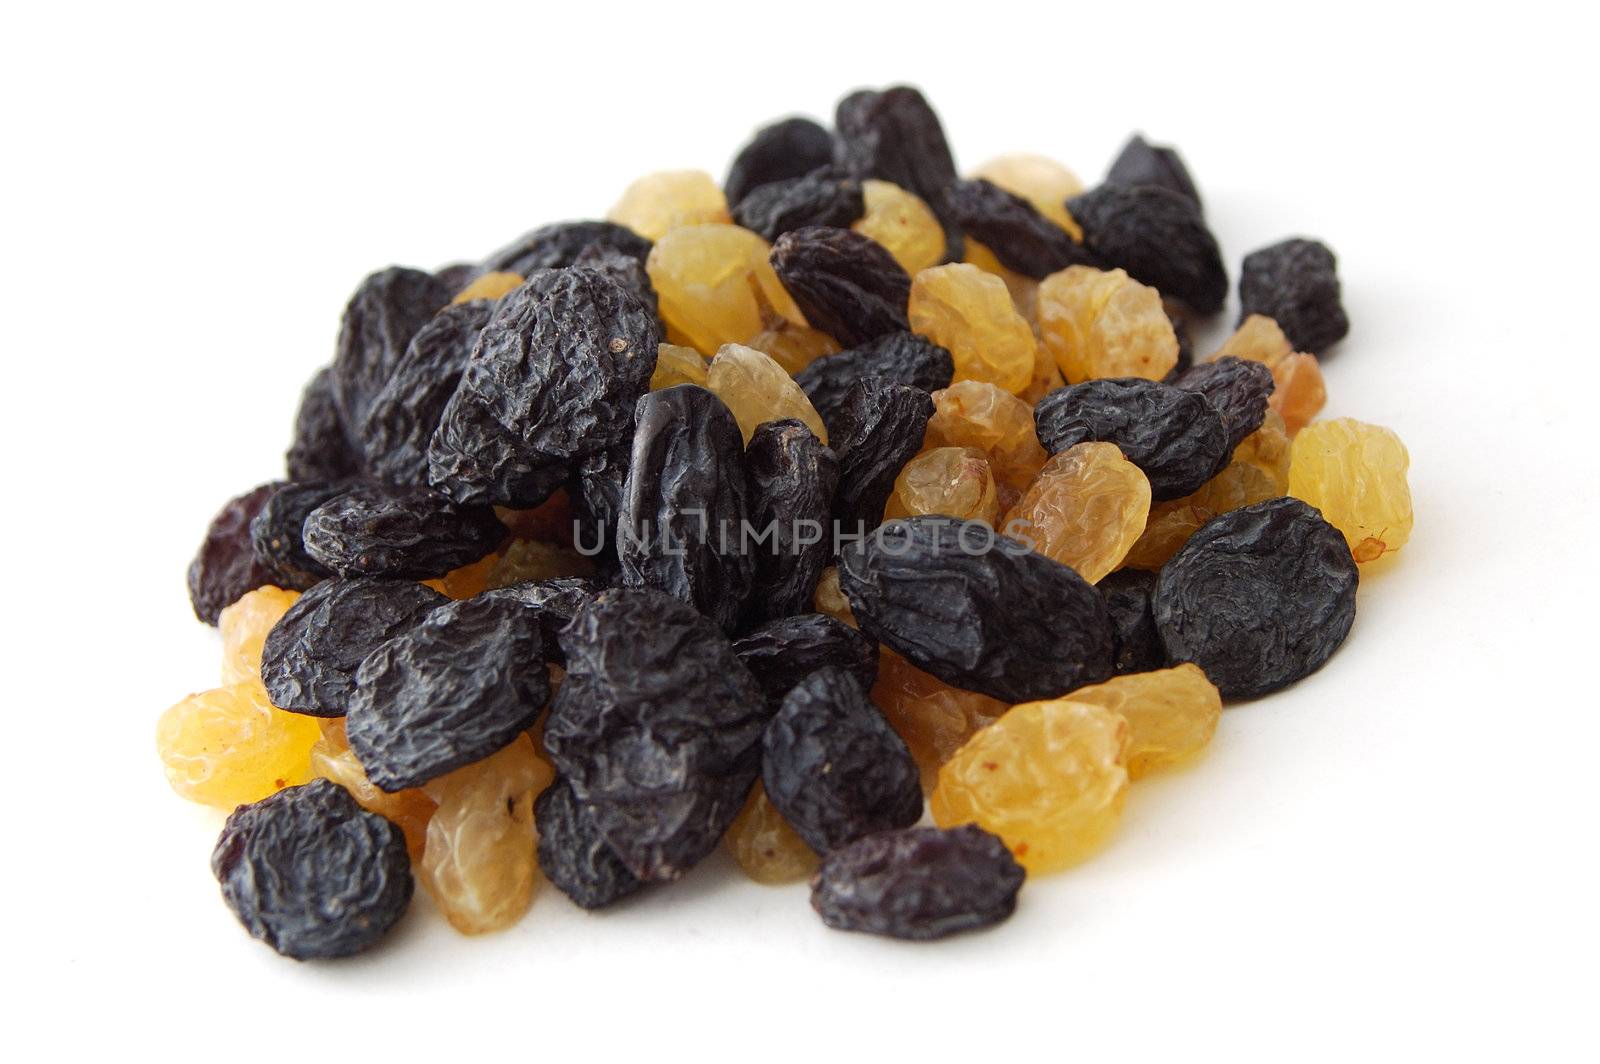 Black and yellow dry raisins.